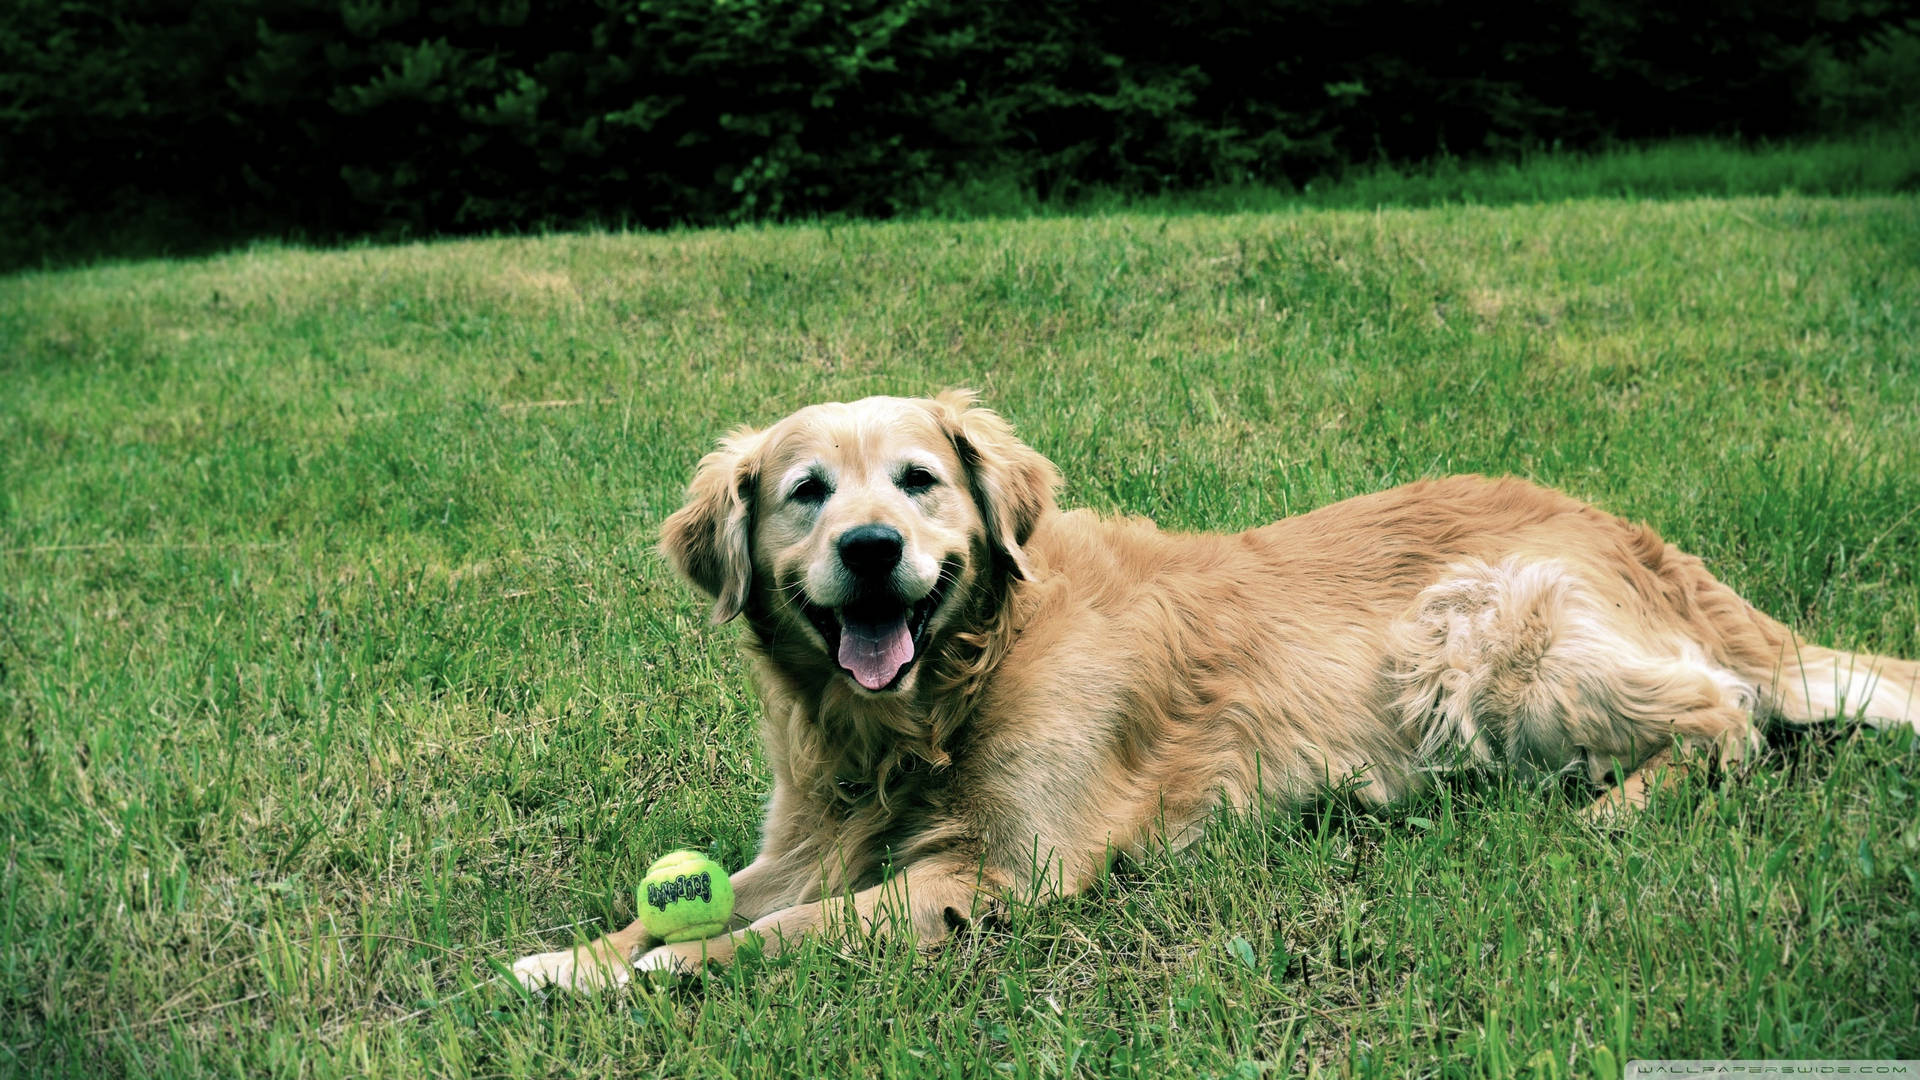 Cute Golden Retriever Dog On Grass Background